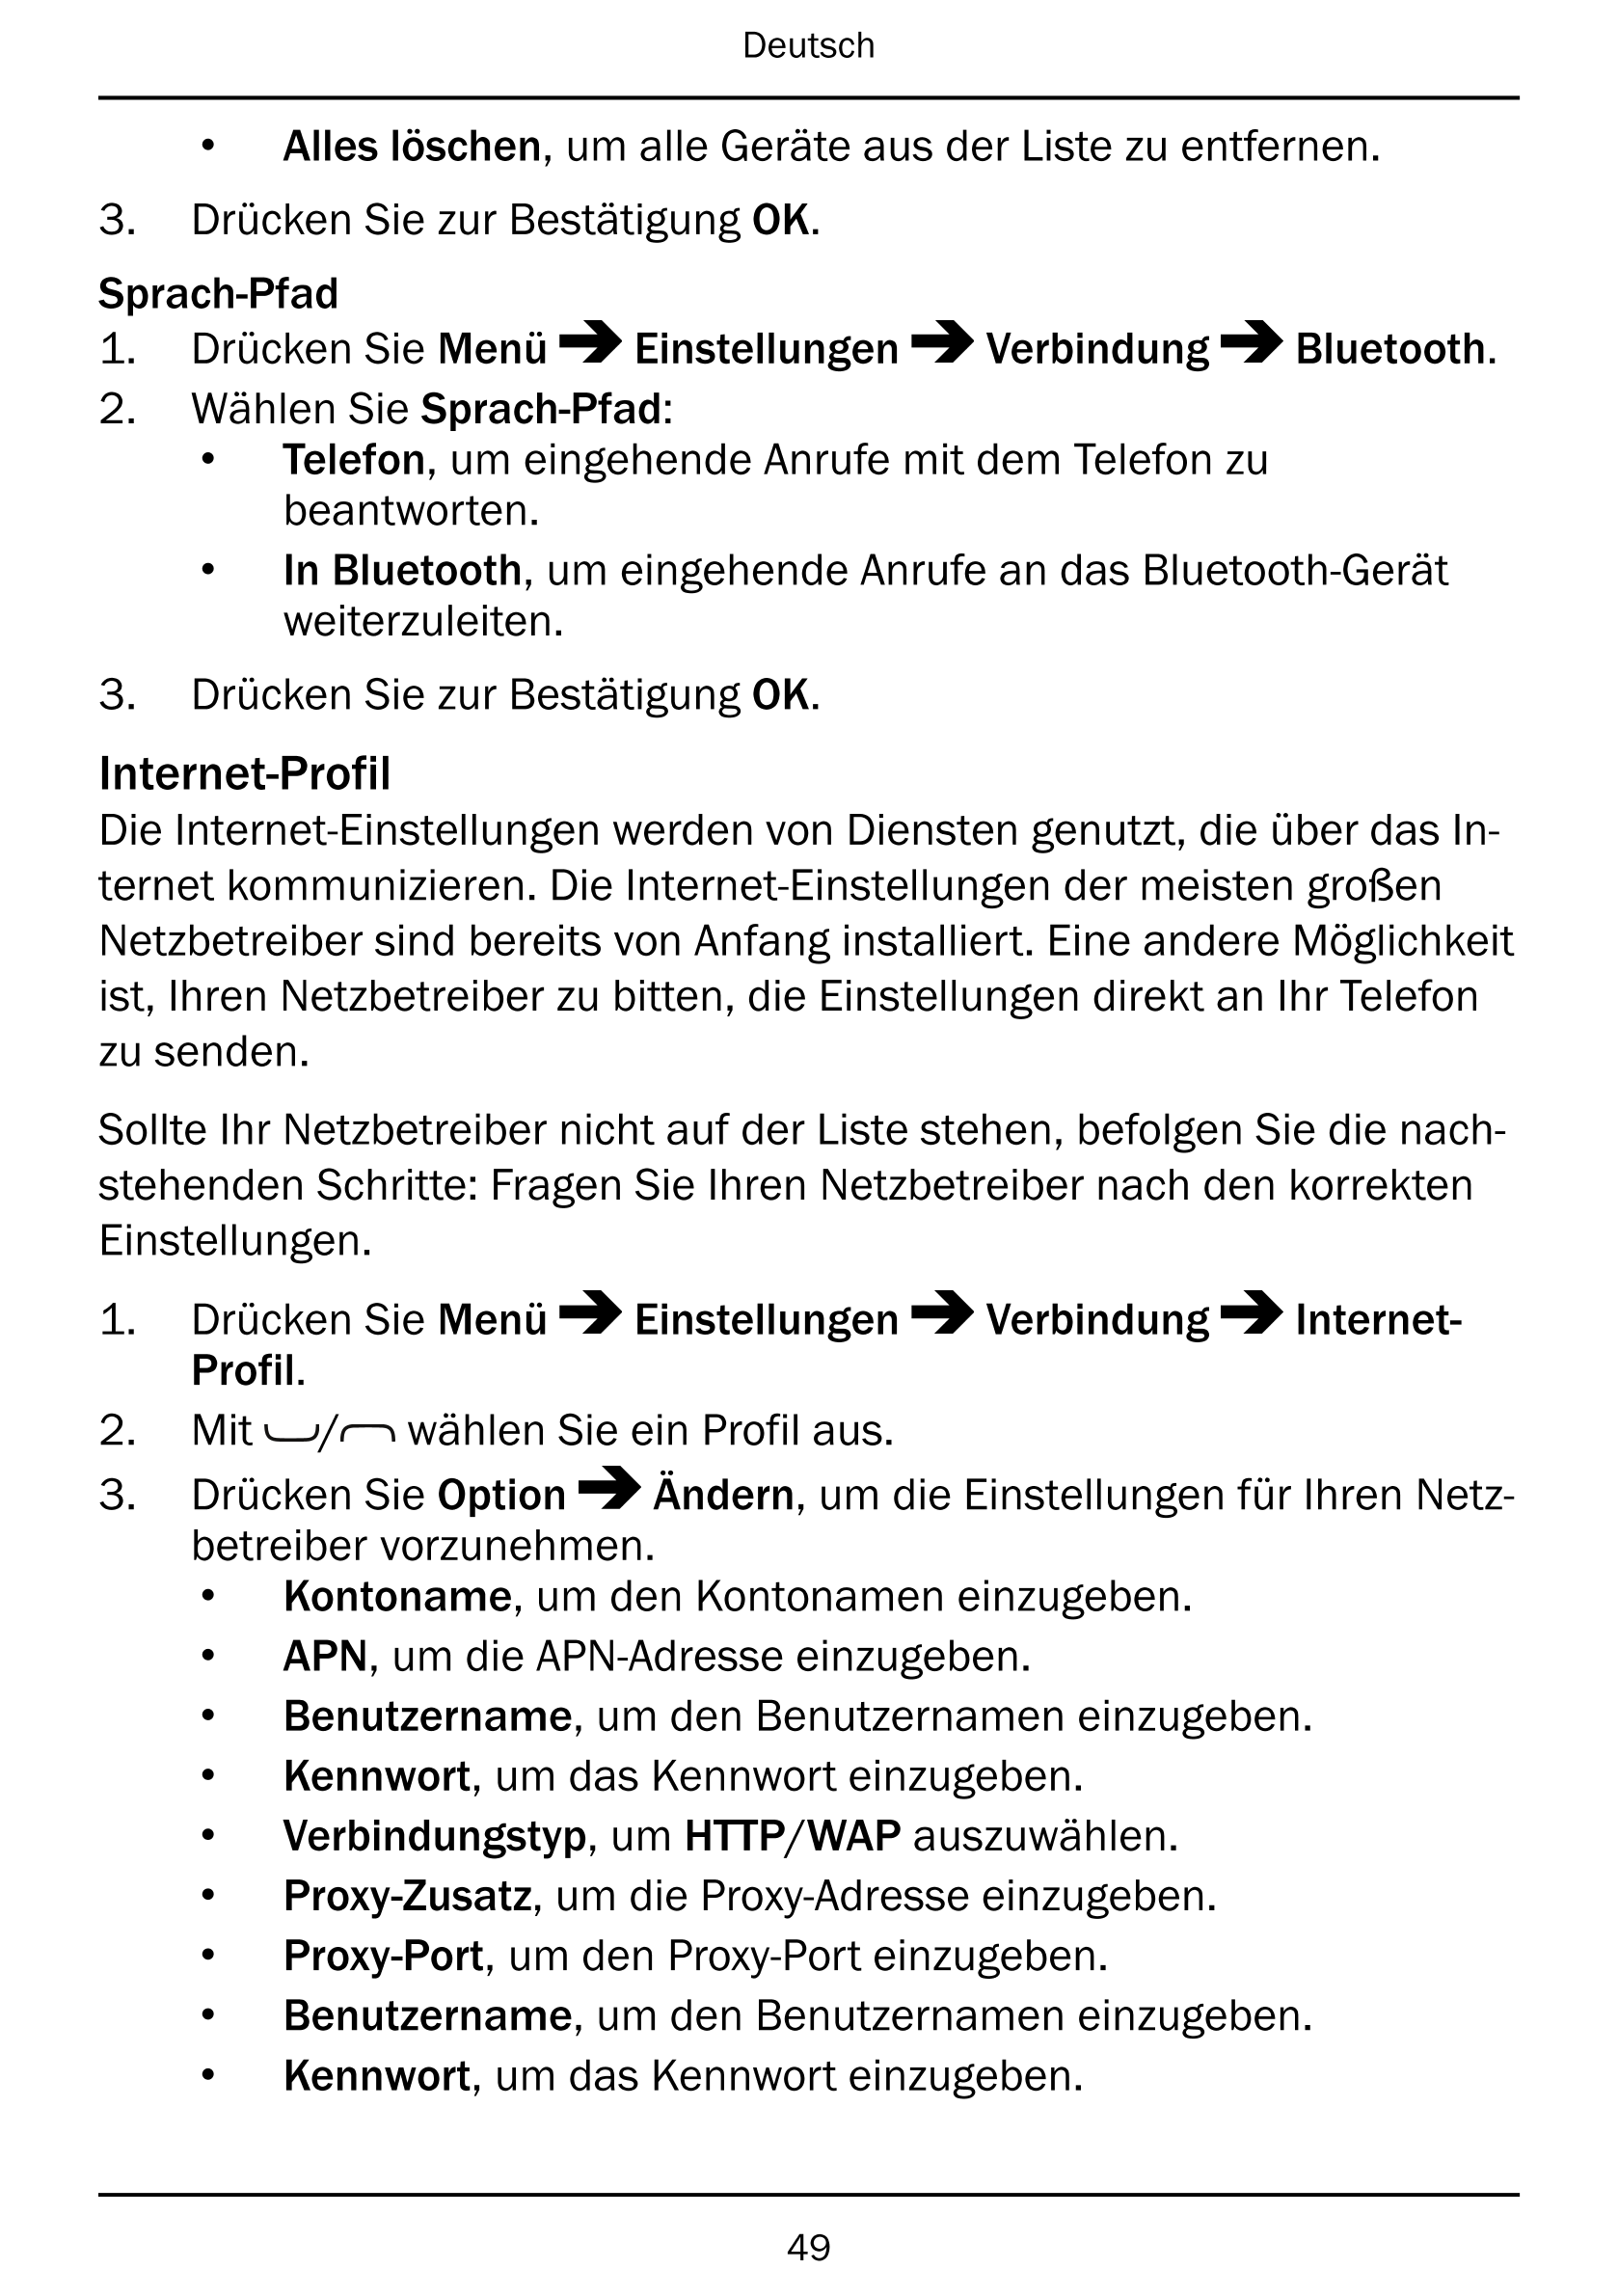 Deutsch
• Alles löschen, um alle Geräte aus der Liste zu entfernen.
3.     Drücken Sie zur Bestätigung OK.
Sprach-Pfad
1.     Dr